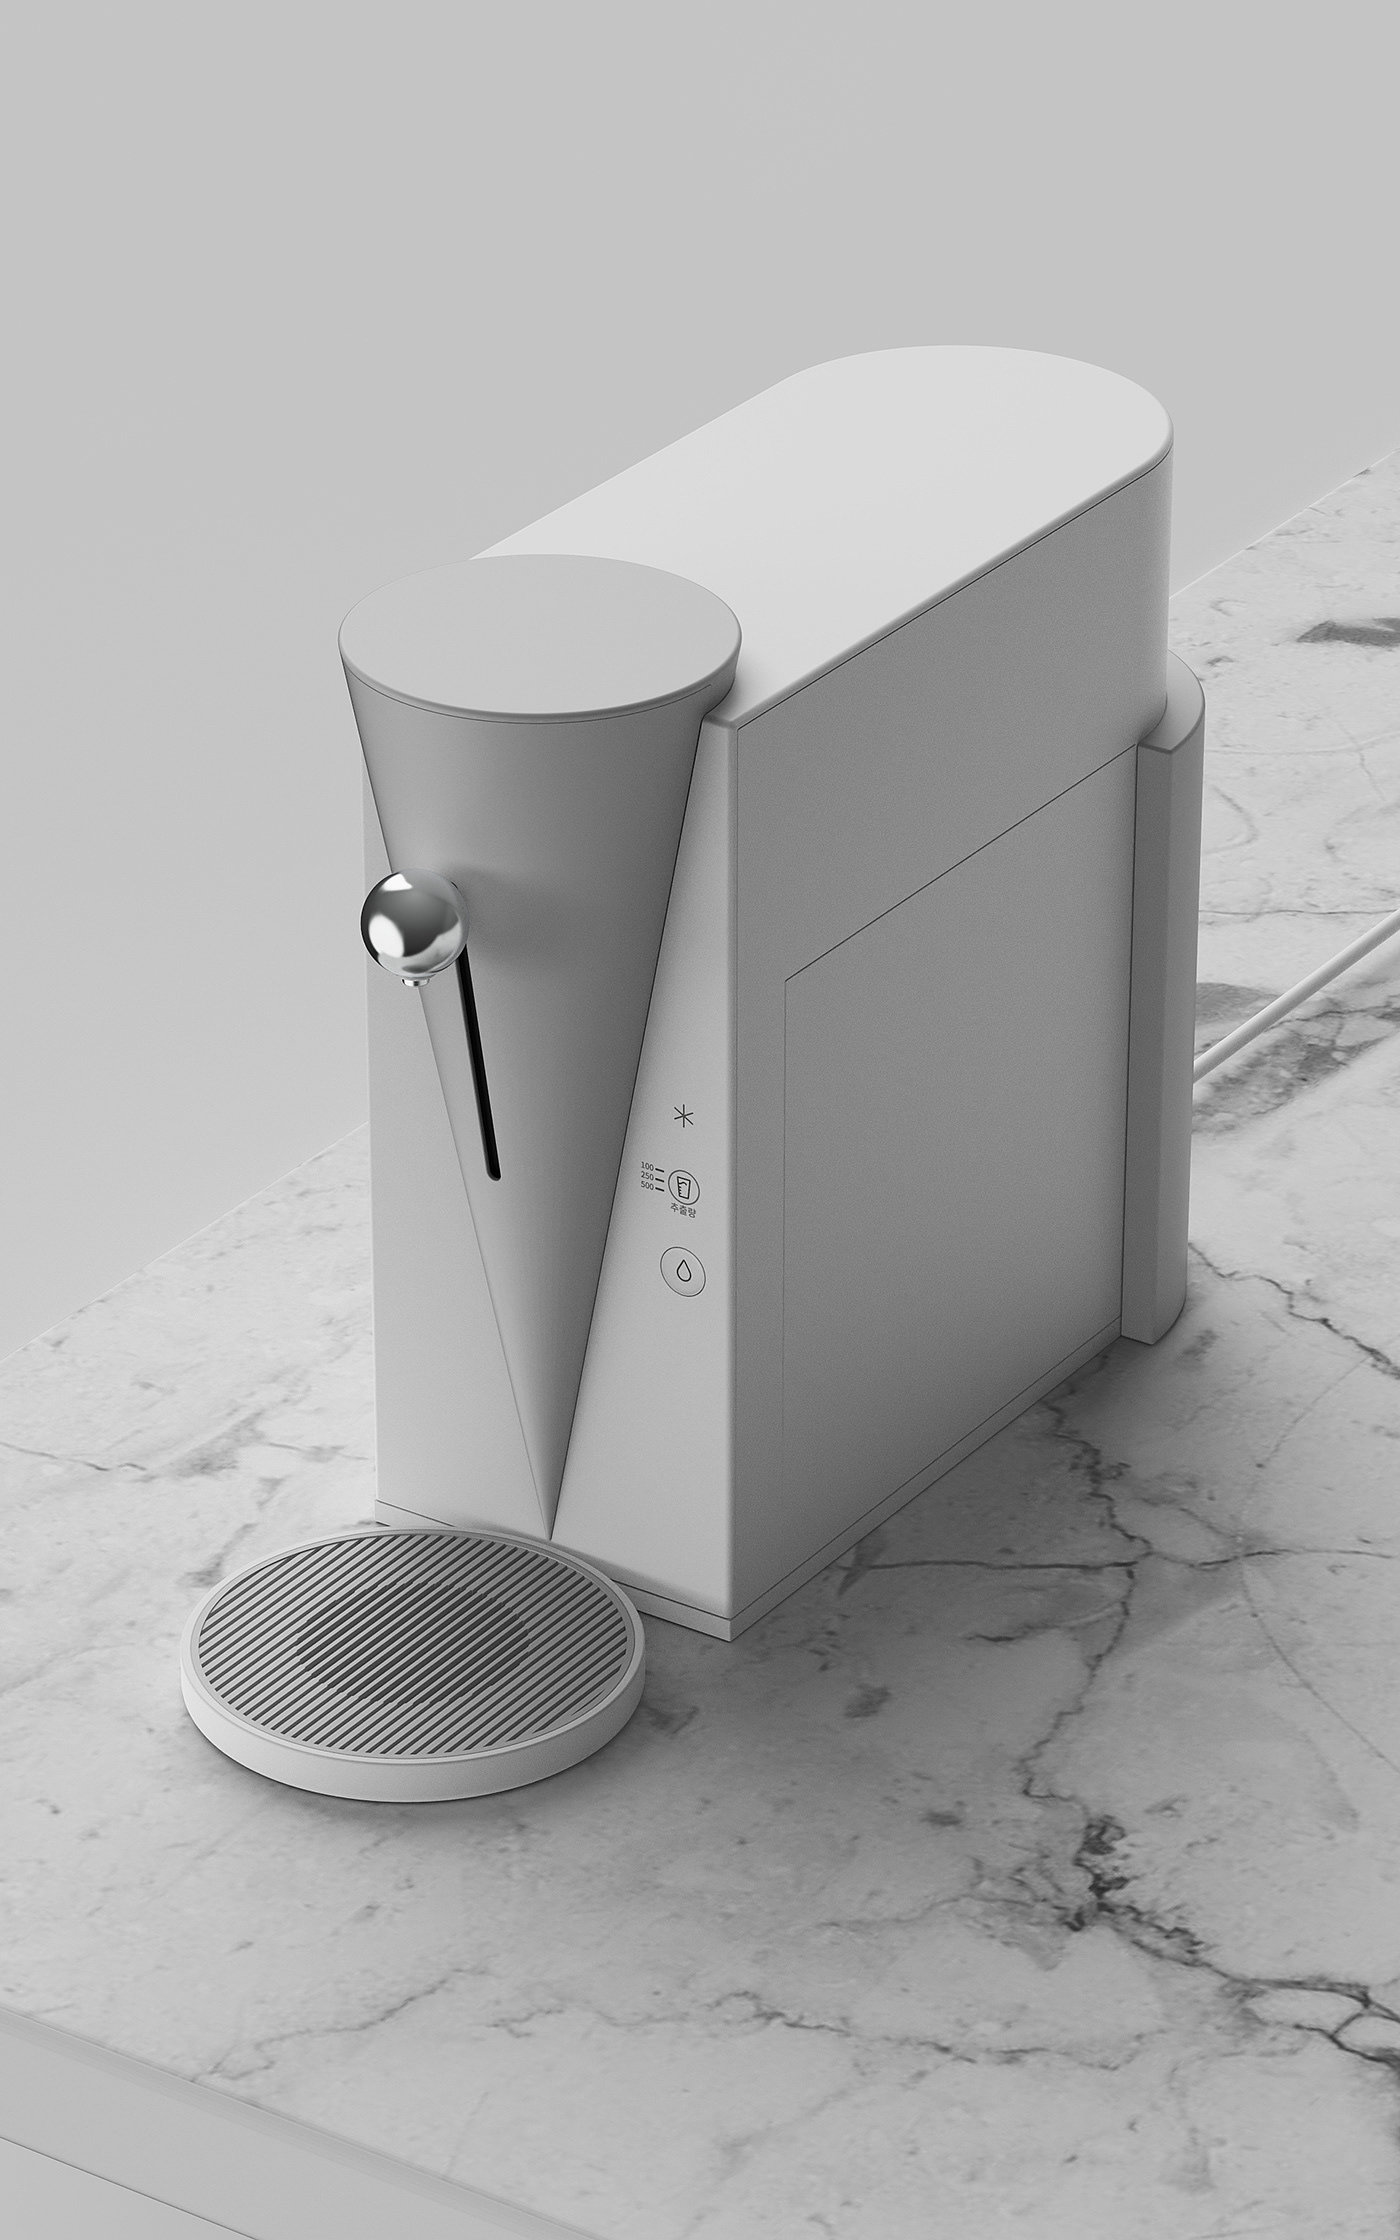 净水器，概念设计，家用电器，Water purifier，